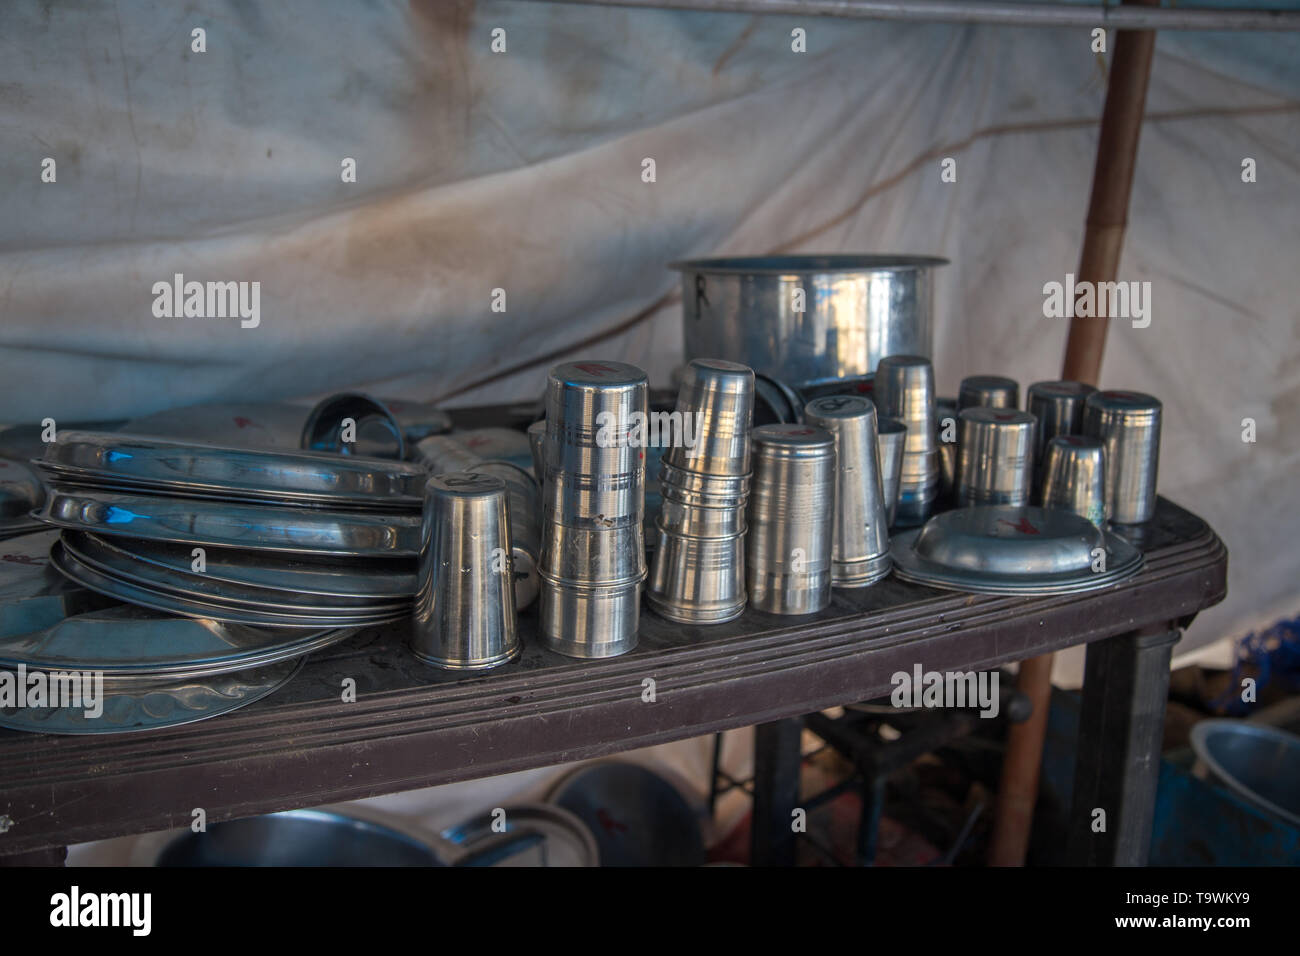 Nahaufnahme von Stahl geschirr Schalen, Töpfe und Schalen von einer alten offene Küche Restaurant in Indien verwendet Stockfoto